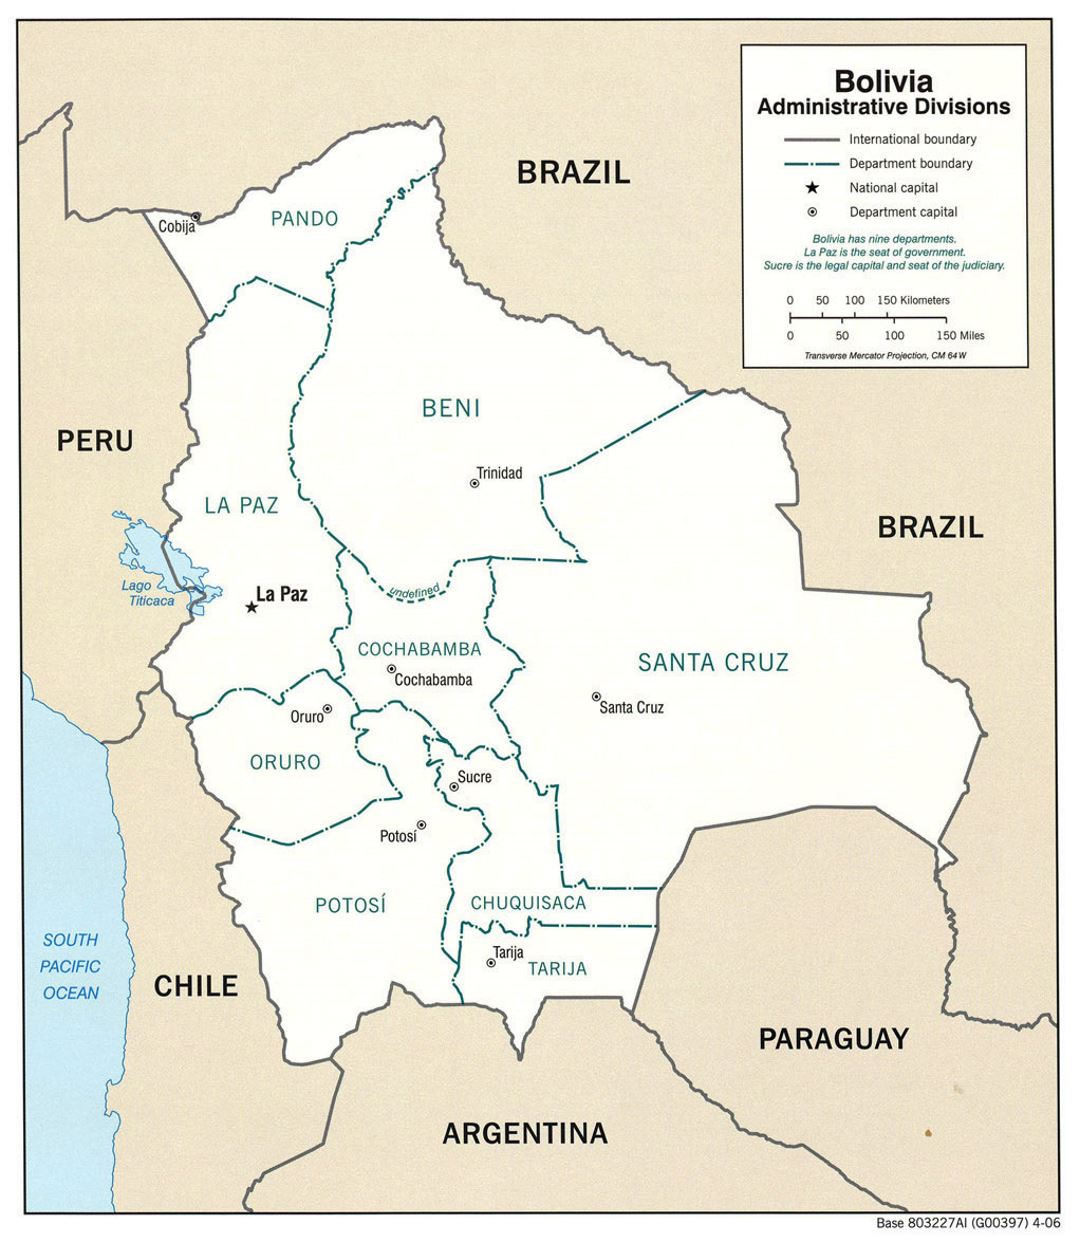 Grande mapa de administrativas divisiones de Bolivia con principales ciudades - 2006